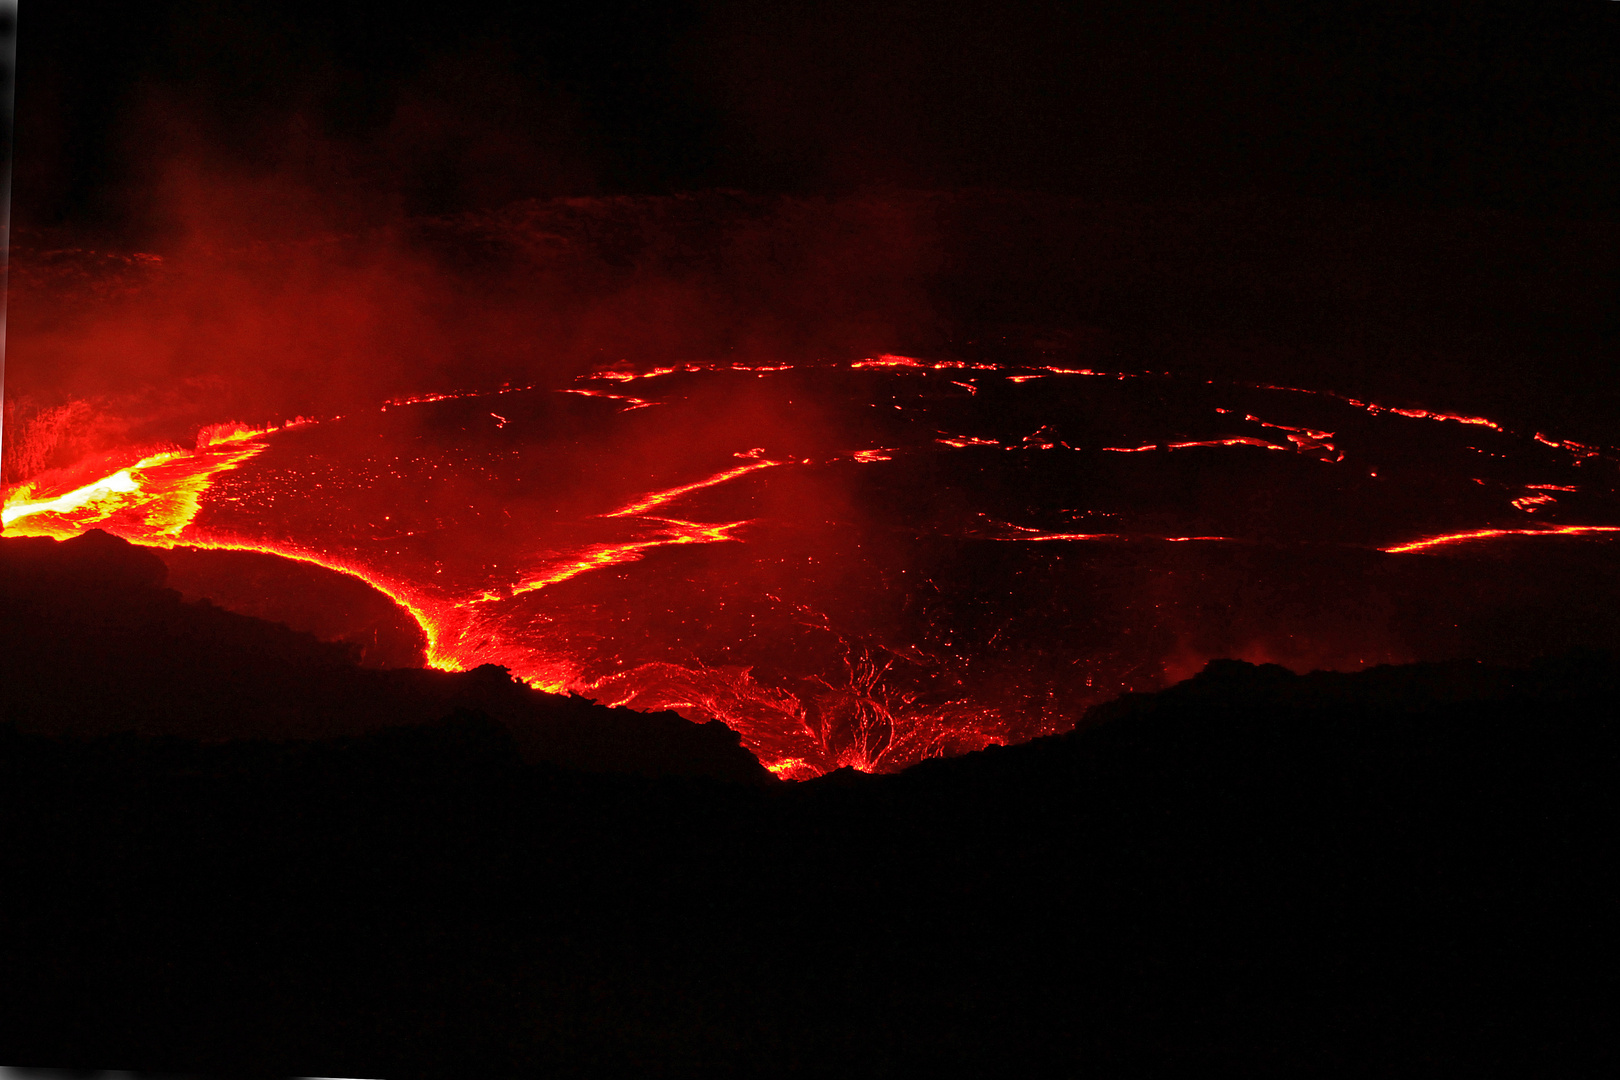 Vulkan Erta Ale, Äthiopien